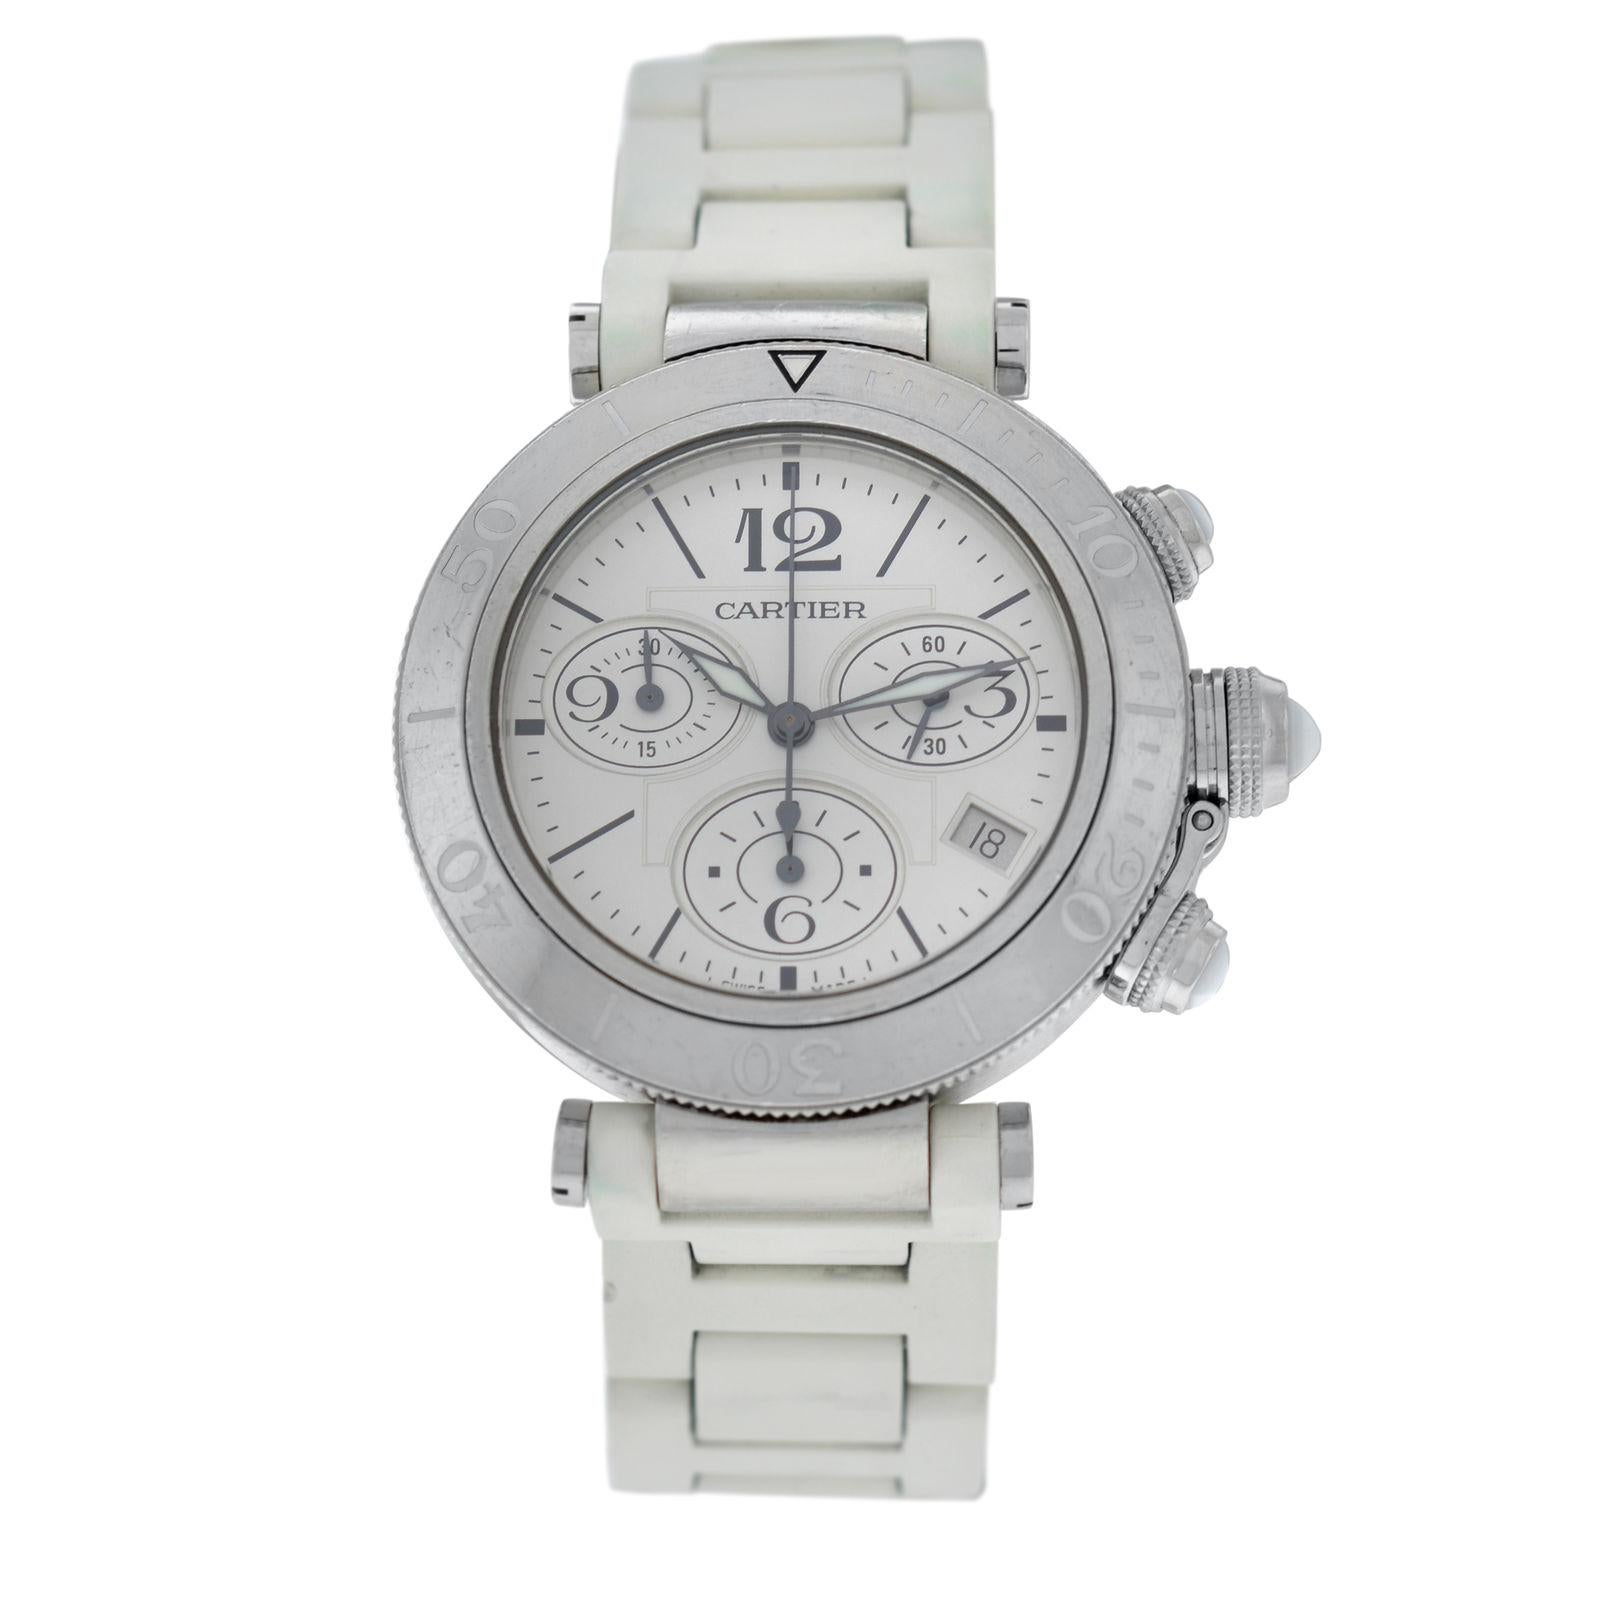 Authentic Unisex Cartier Pasha Steel Date Quartz Chronograph Watch For Sale